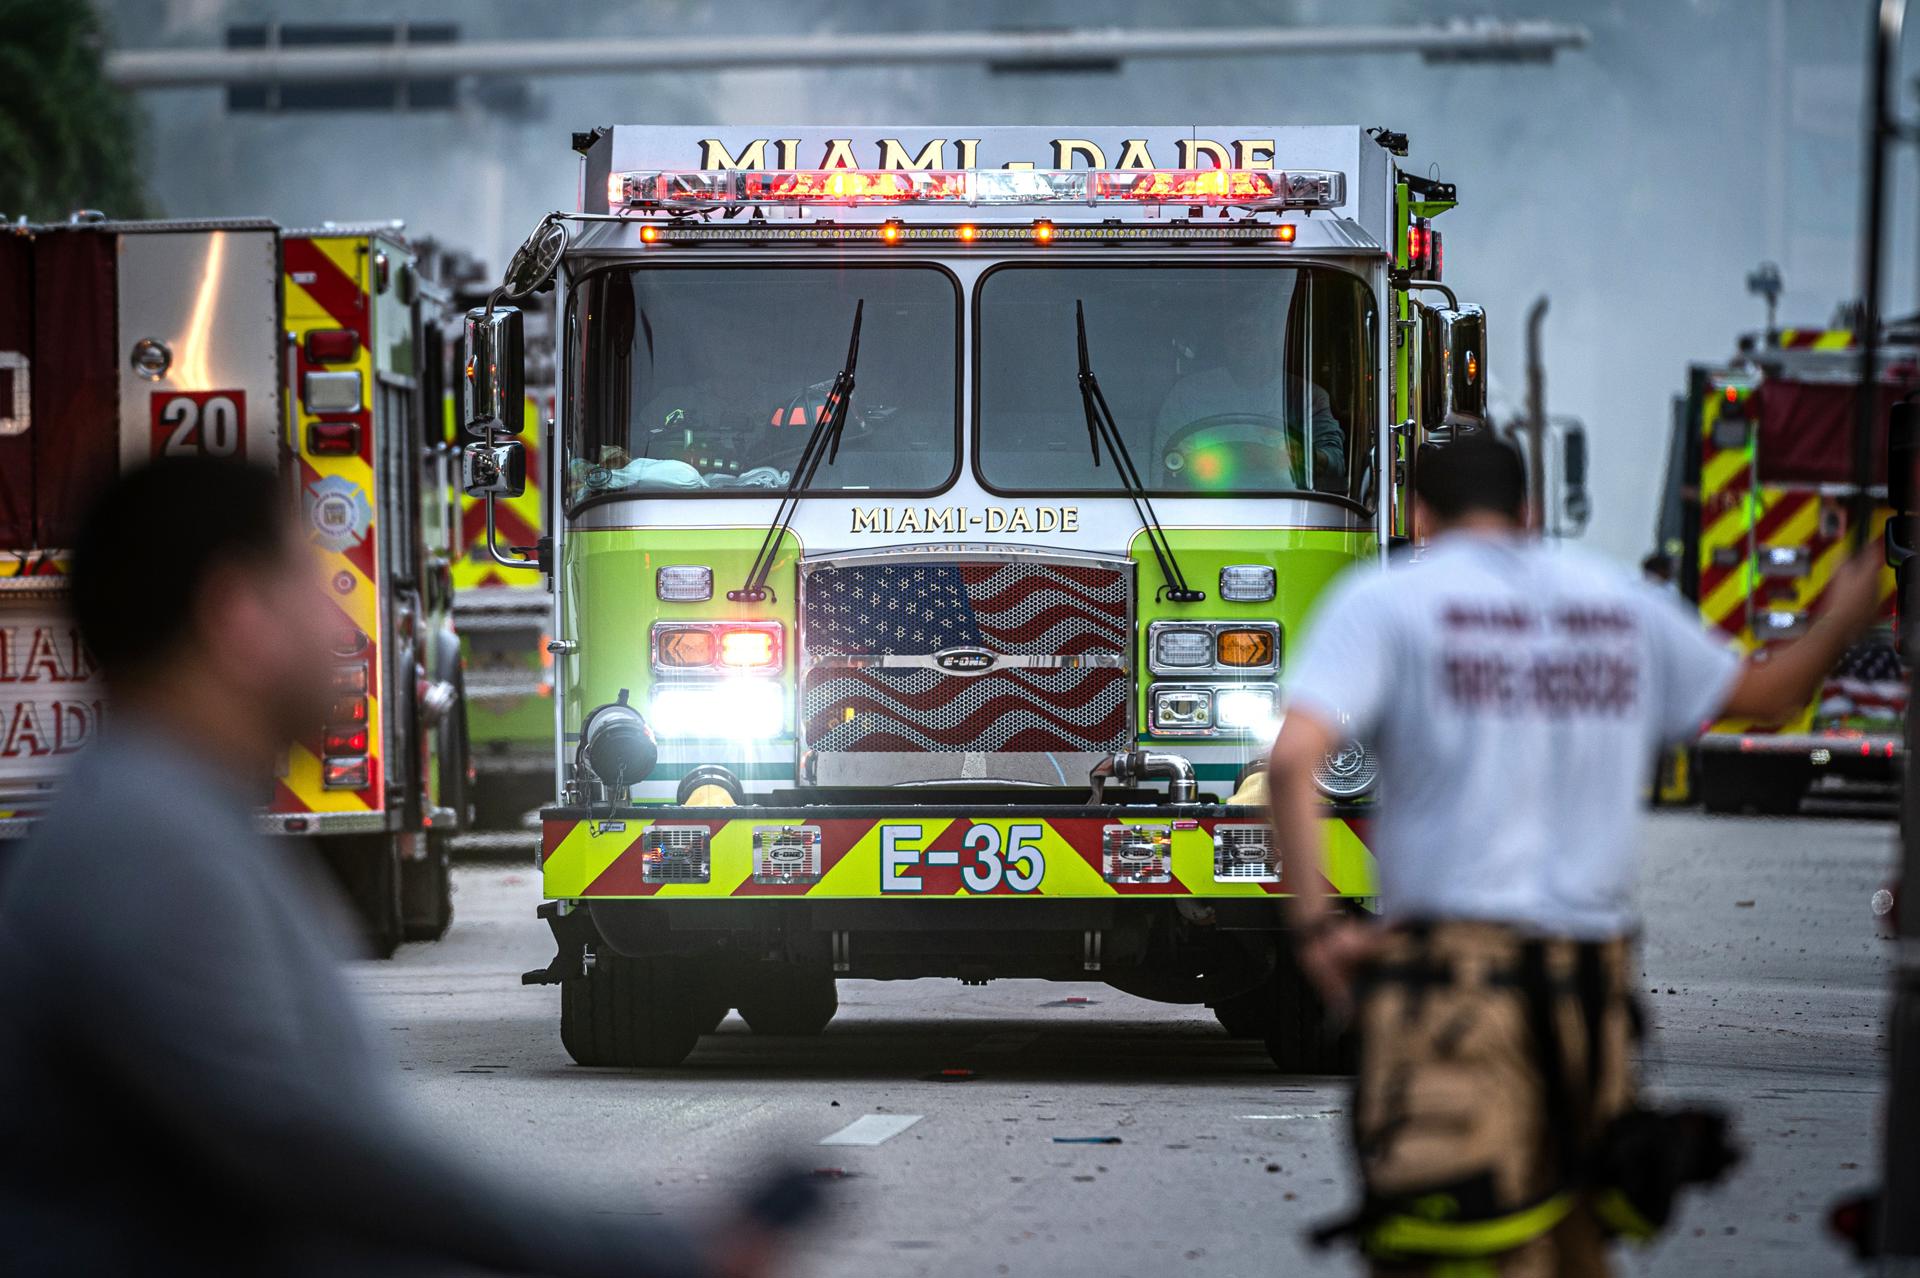 Continúa activo incendio en planta de tratamiento desechos de Miami-Dade